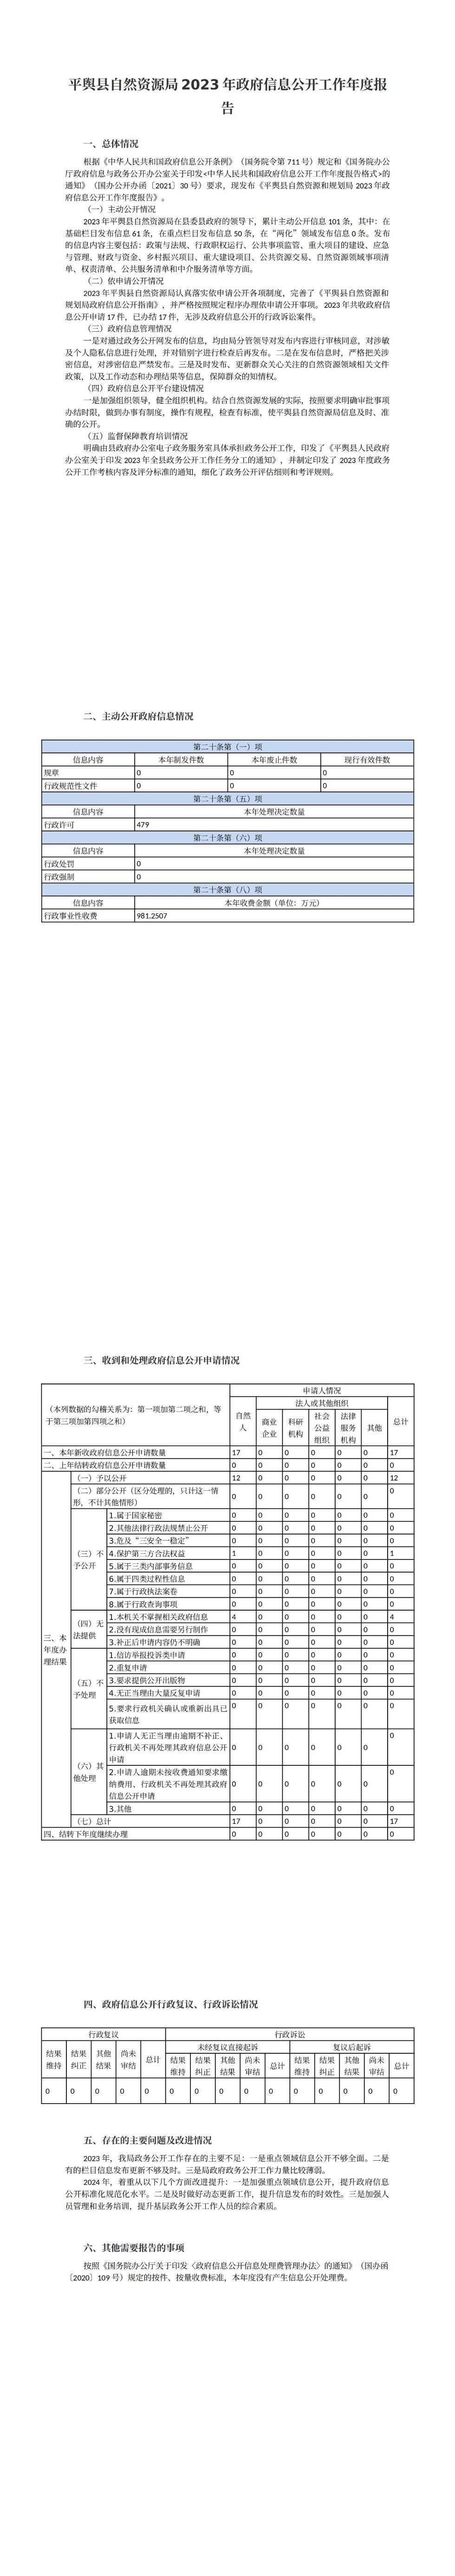 平舆县自然资源局2023年政府信息公开工作年度报告_00.jpg